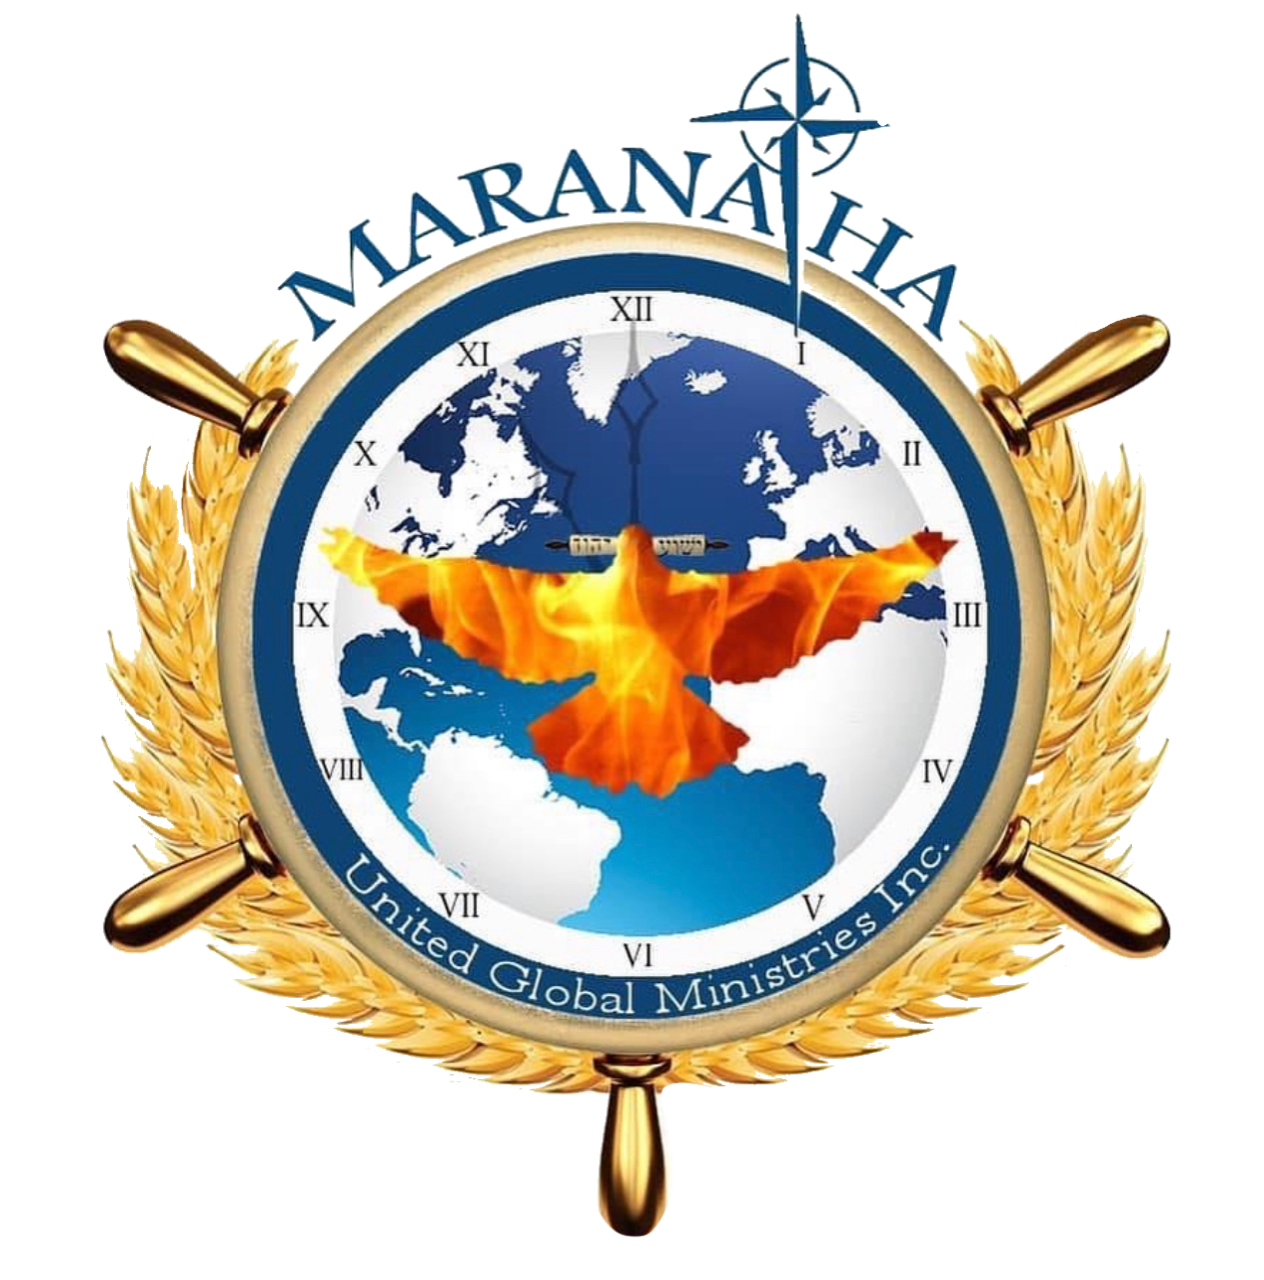 Maranatha United Global Ministries